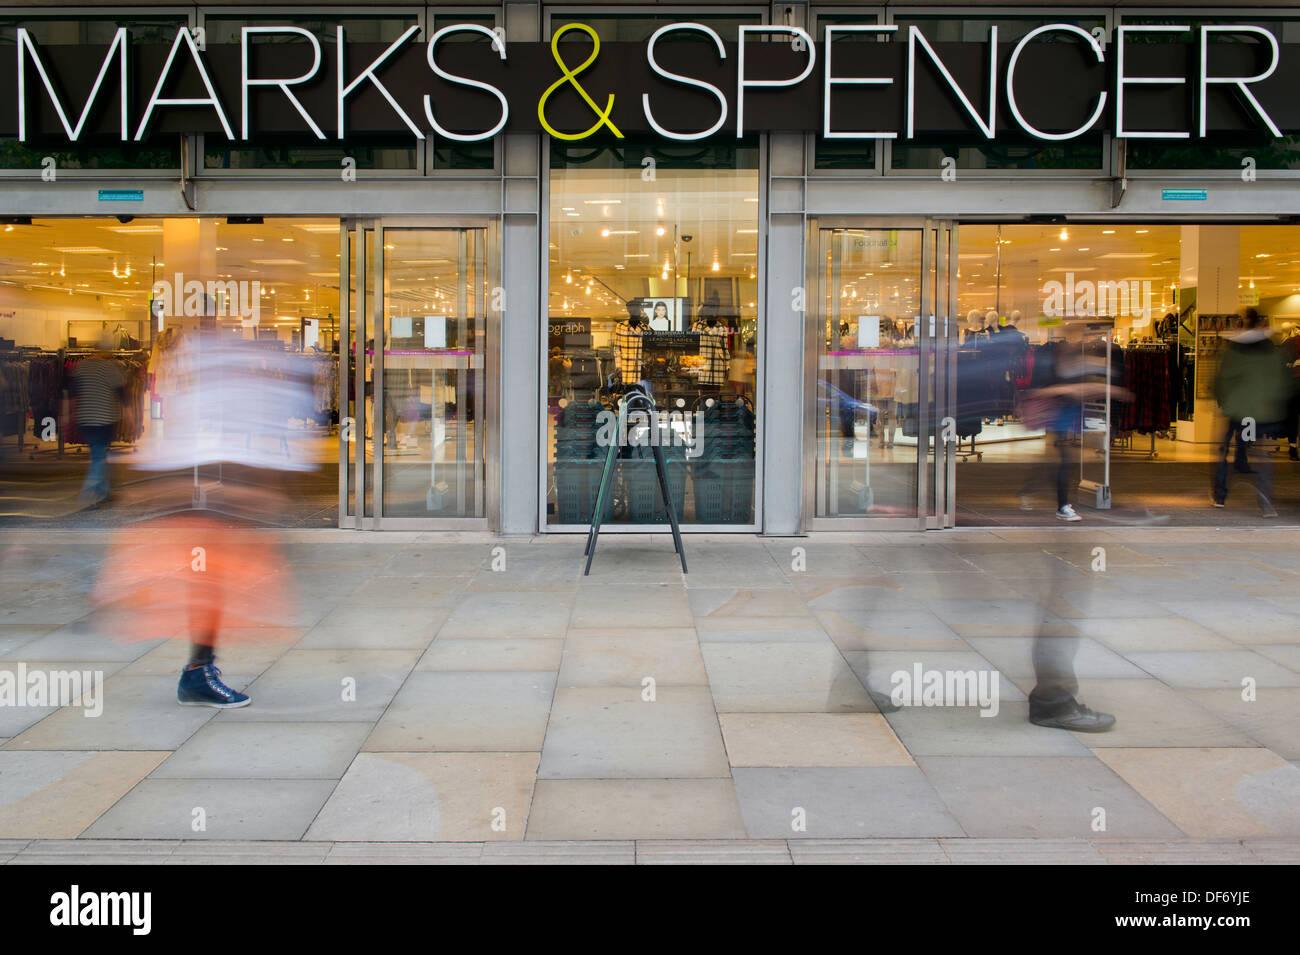 Der Eingang der Markierungen und Spencer Flagship-Store in Manchester ohne Menschen (nur zur redaktionellen Verwendung). Stockfoto